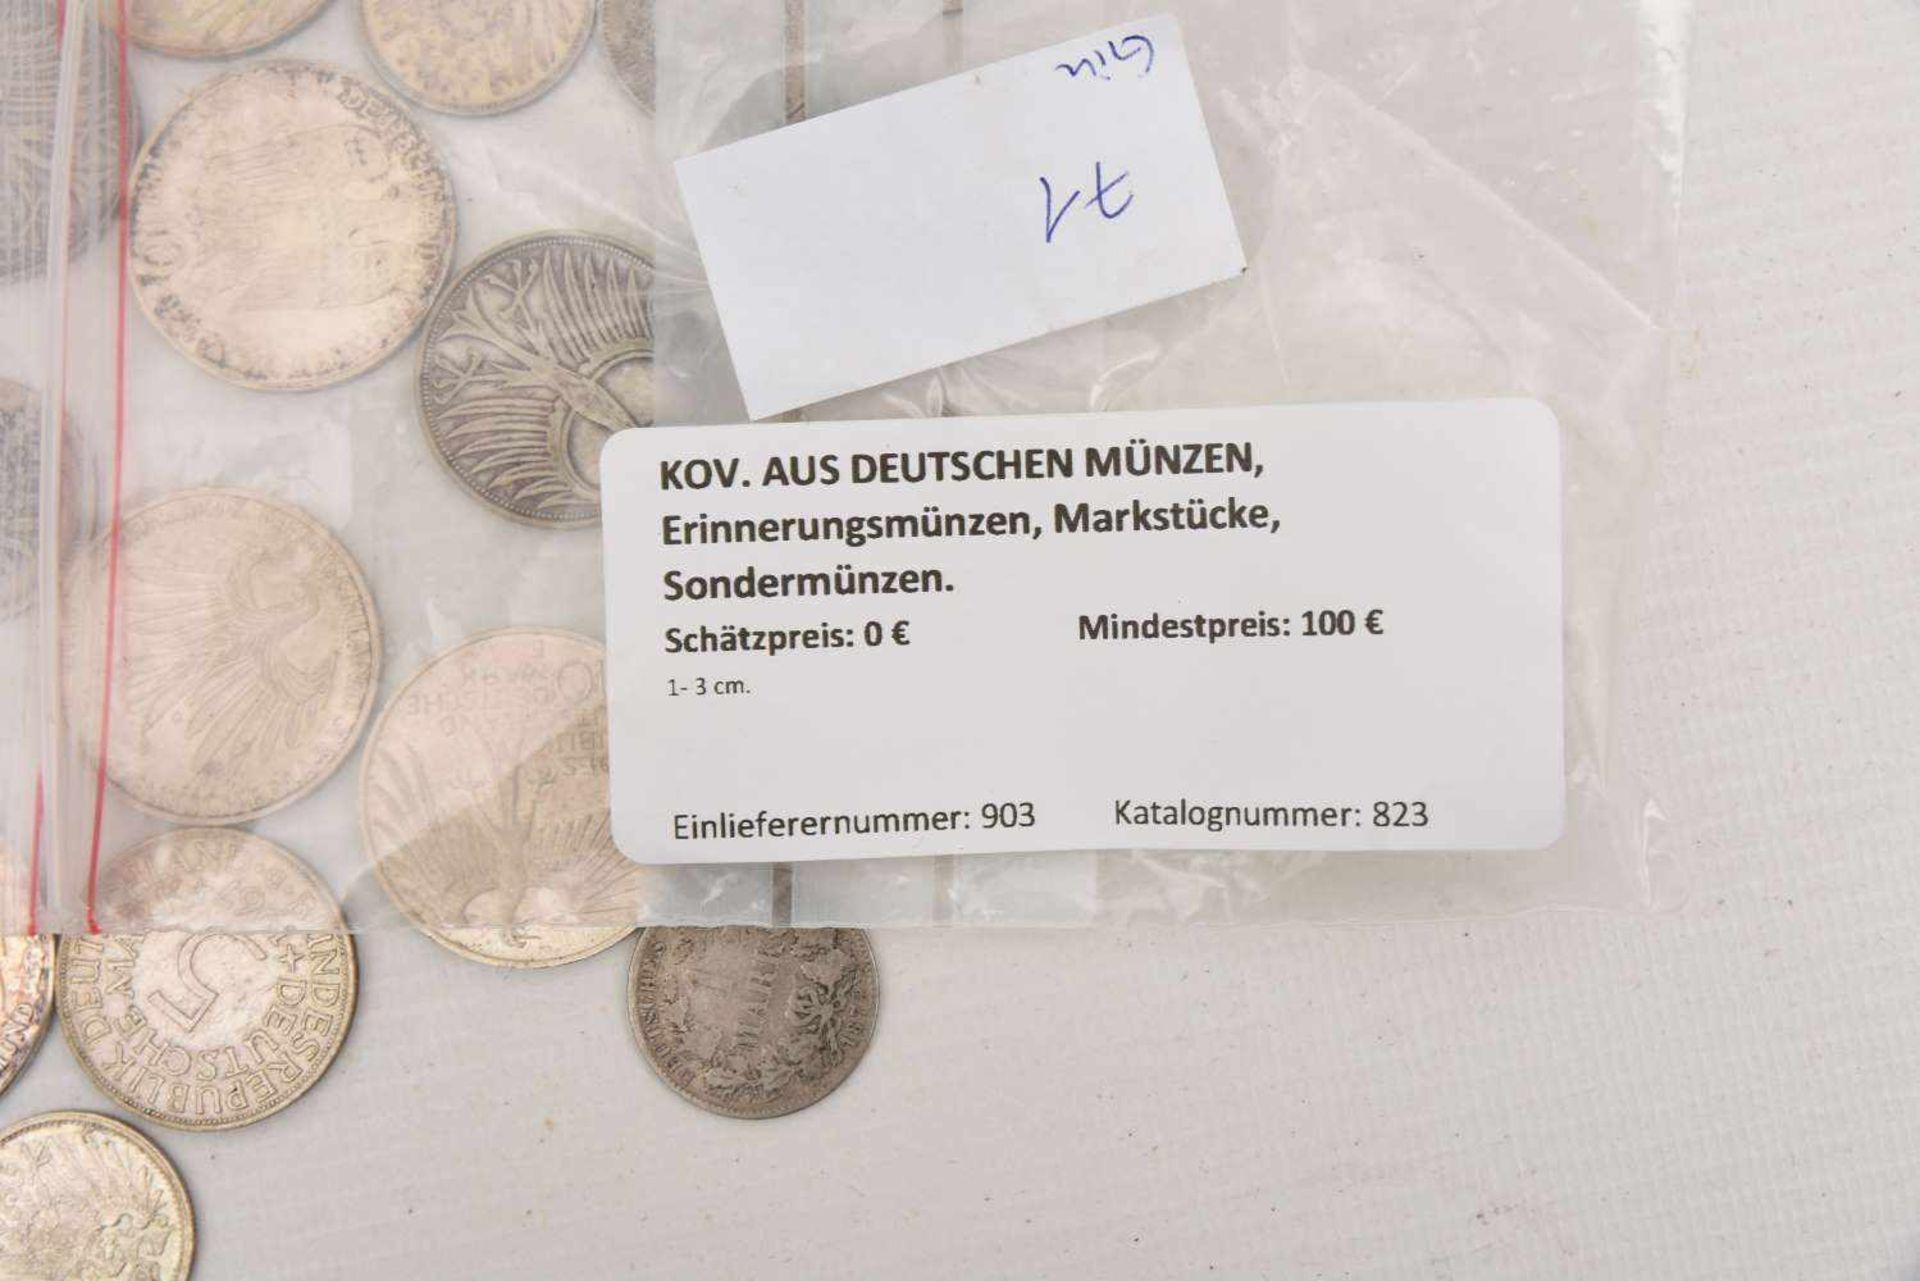 KOV. AUS DEUTSCHEN MÜNZEN, Erinnerungsmünzen, Markstücke, Sondermünzen. 1874 - 1995. 470gr. 1- 3 - Bild 2 aus 2